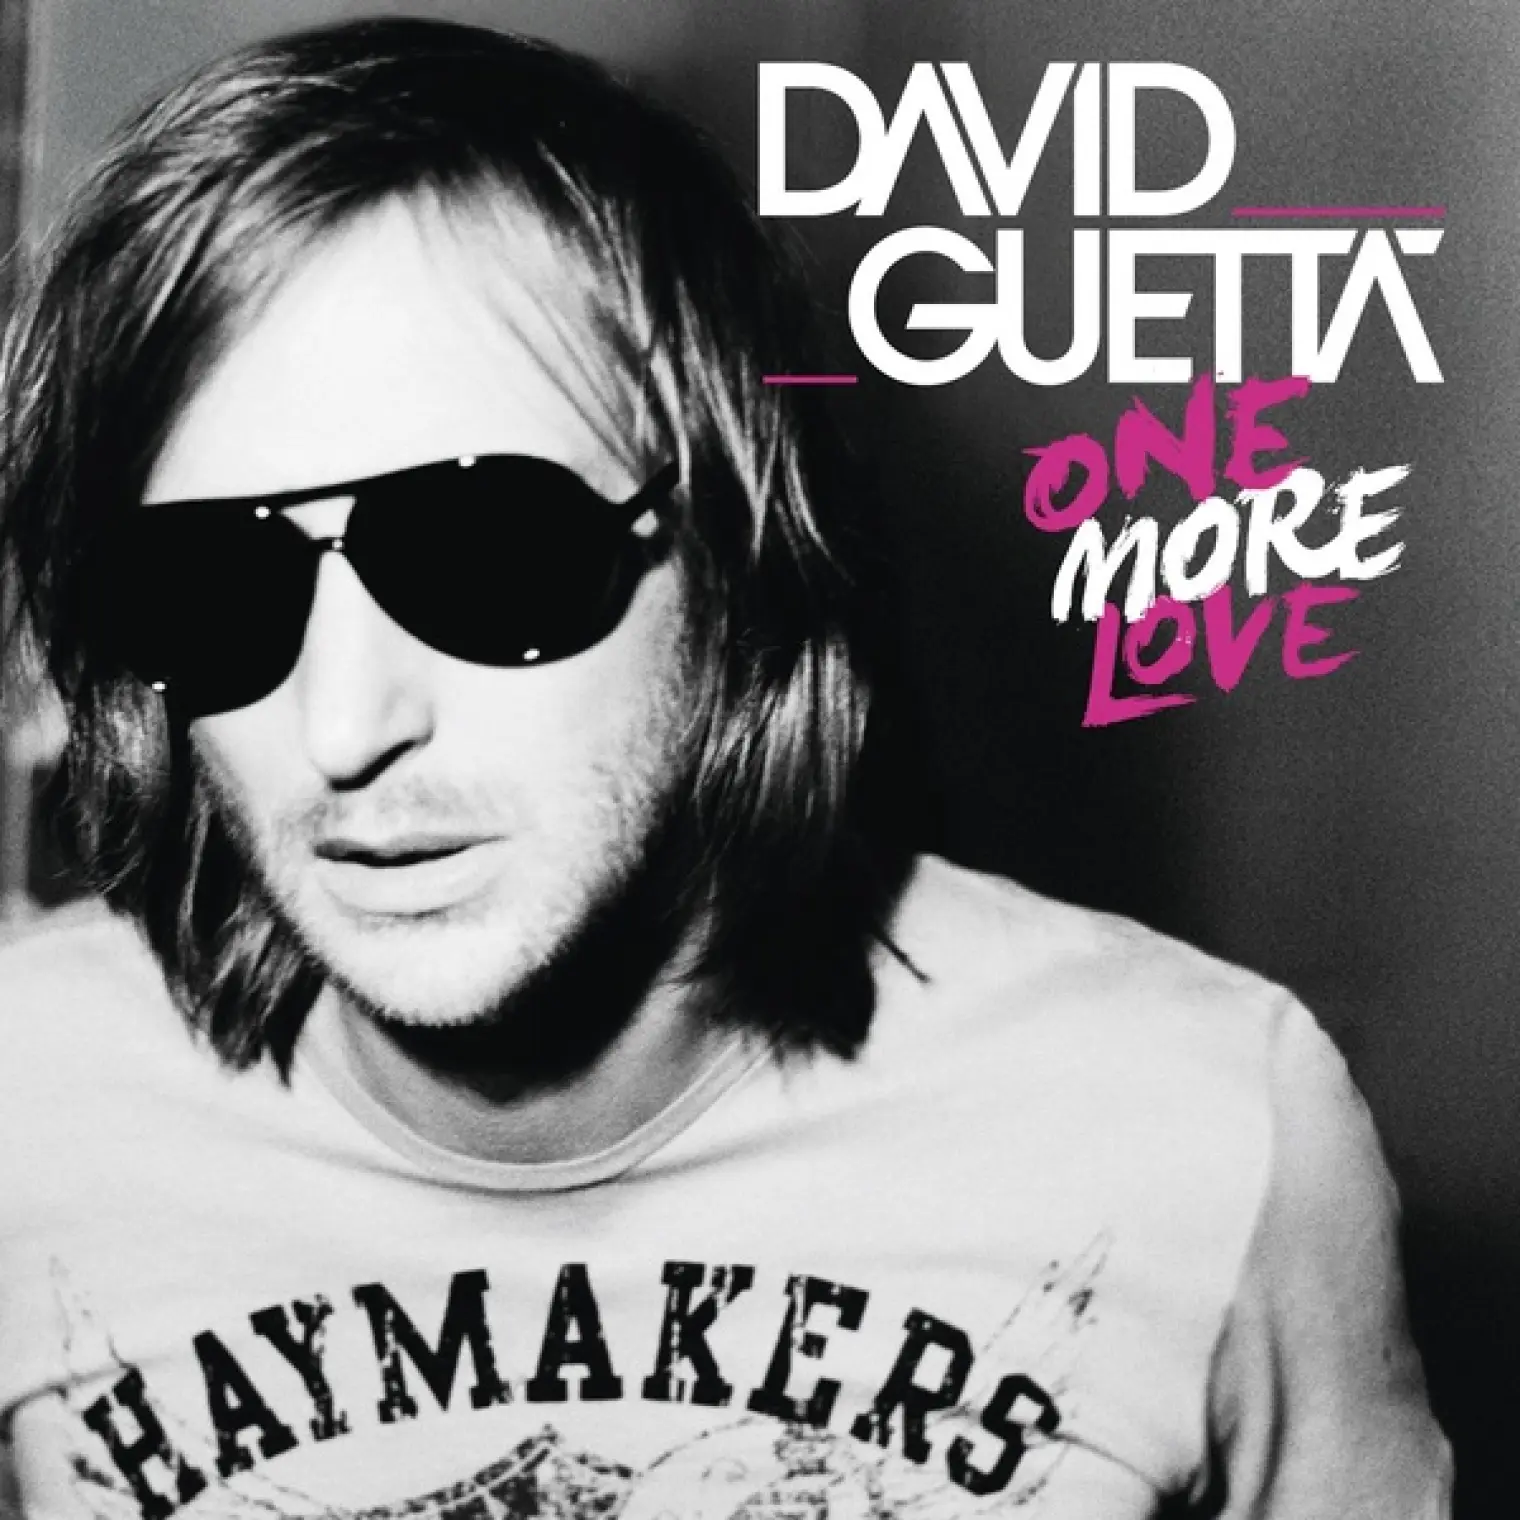 One More Love -  David Guetta 